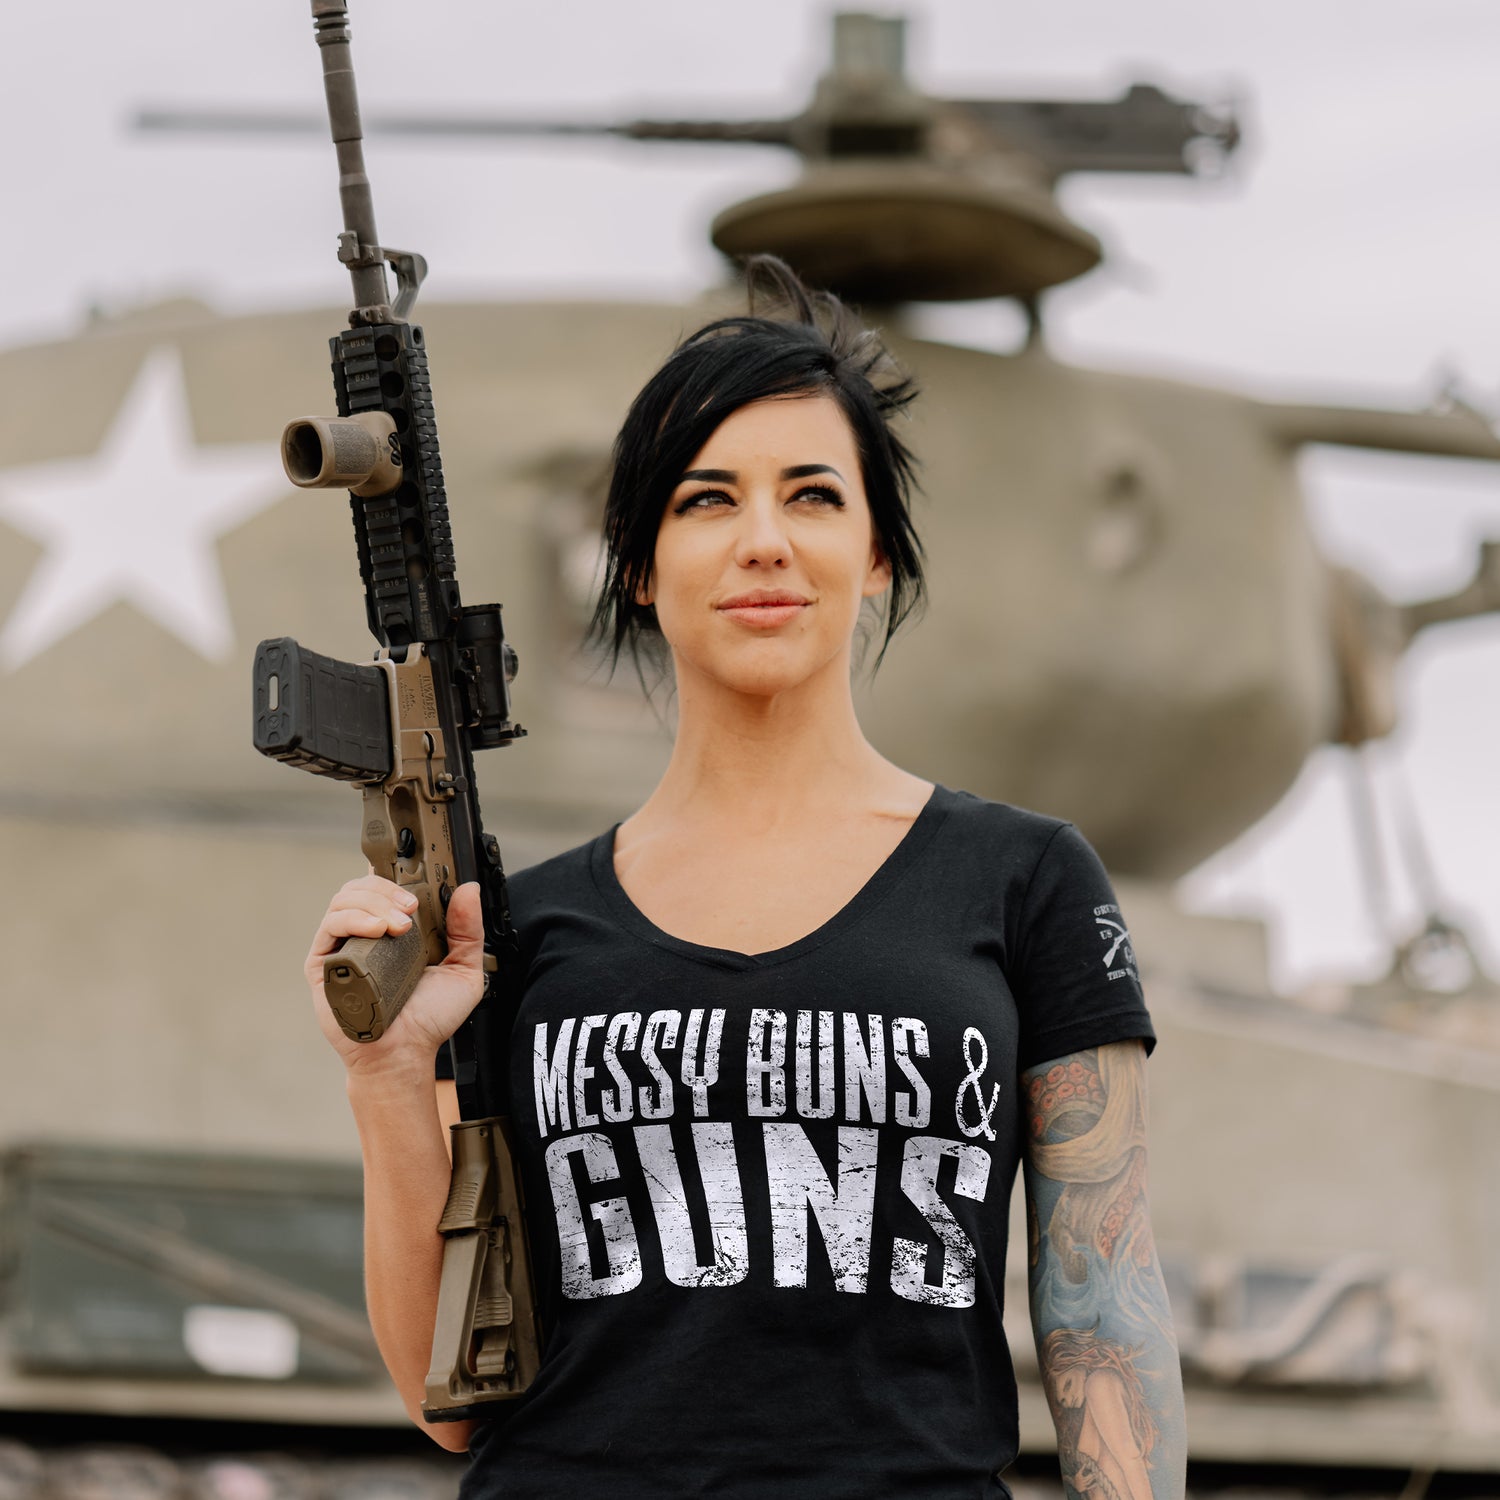  Pro Gun Shirts for Women 